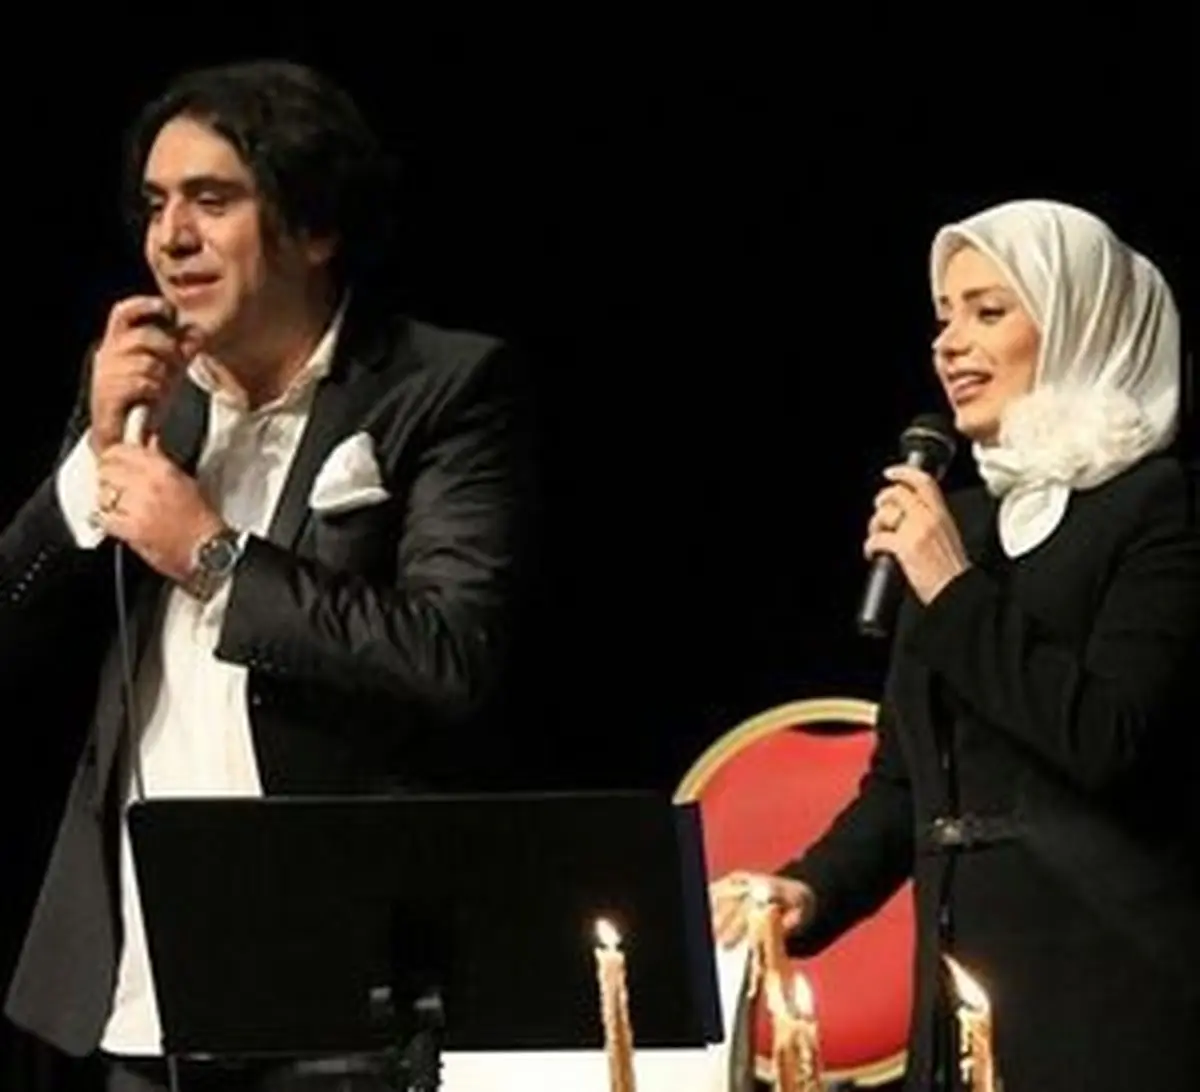  ازدواج خانم مجری با خواننده معروف؟/ عکس